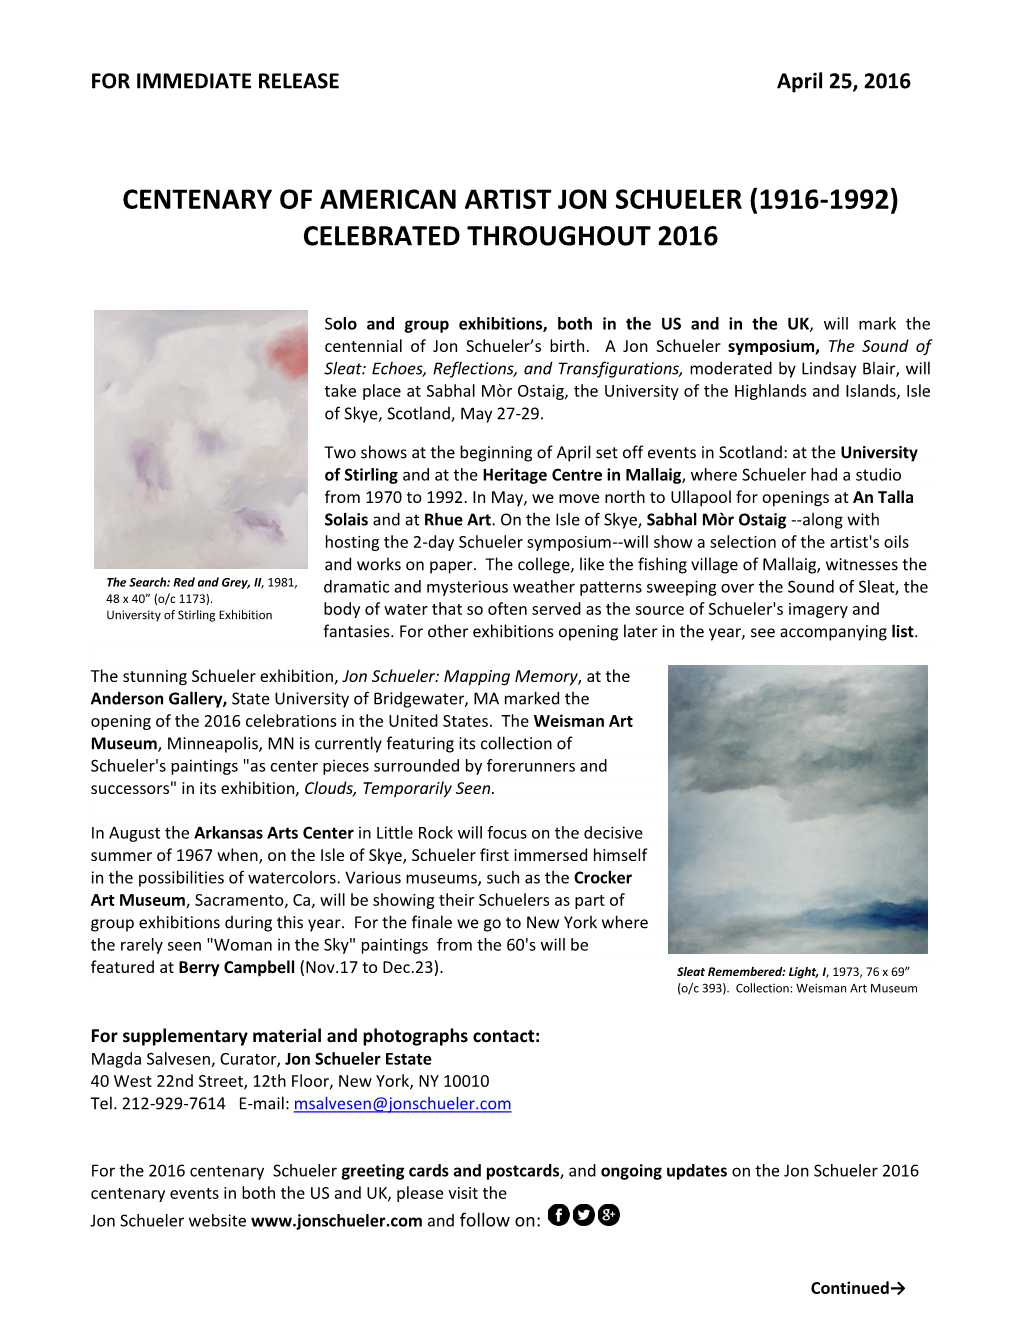 Centenary of American Artist Jon Schueler (1916-1992) Celebrated Throughout 2016